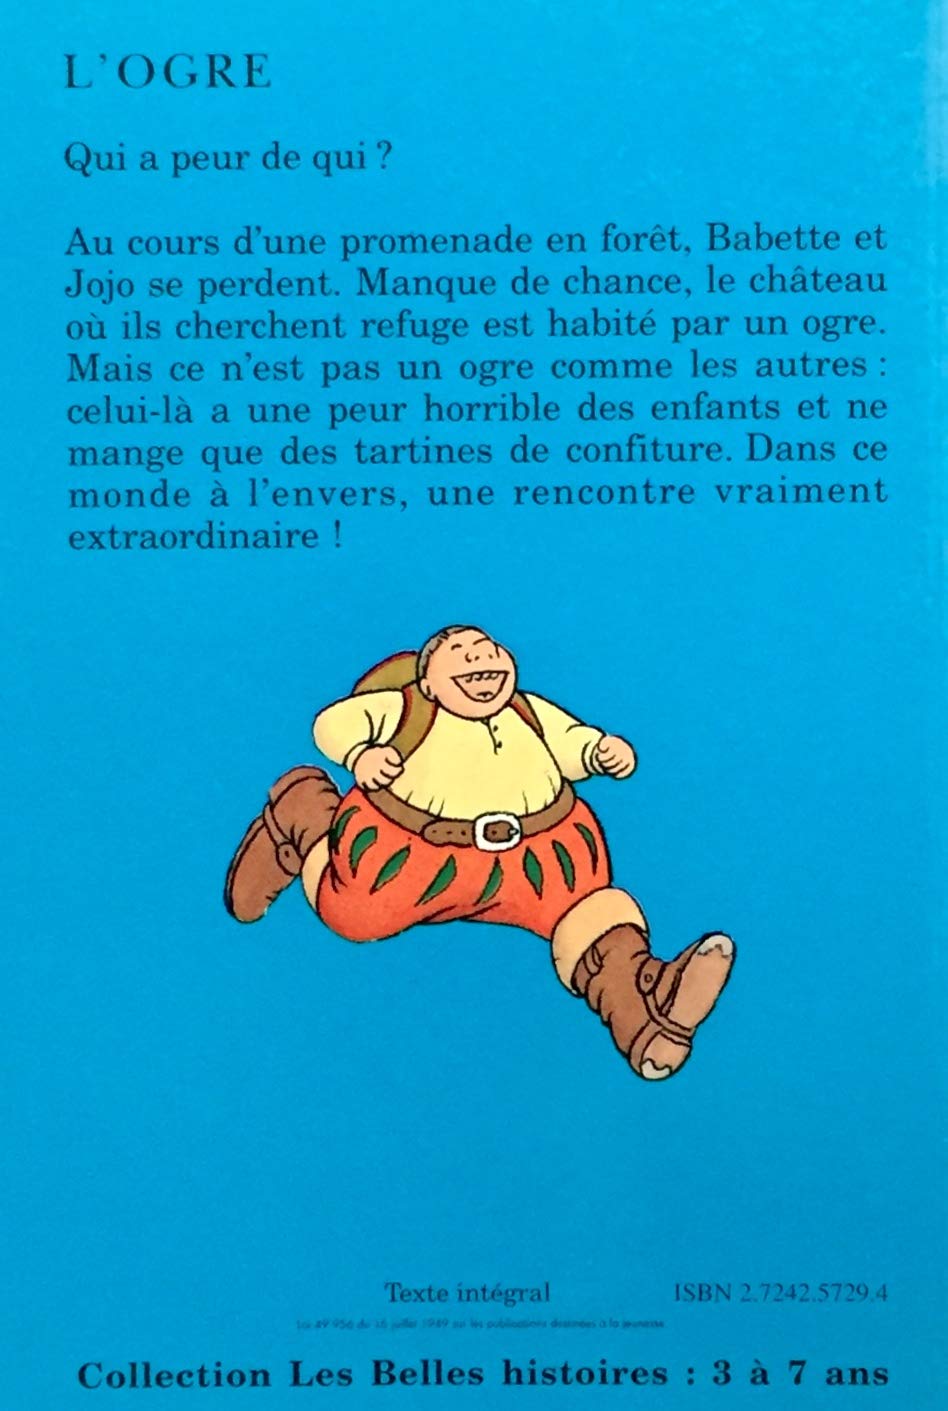 Les belles histoires : L'ogre (Marie-Hélène Delval)